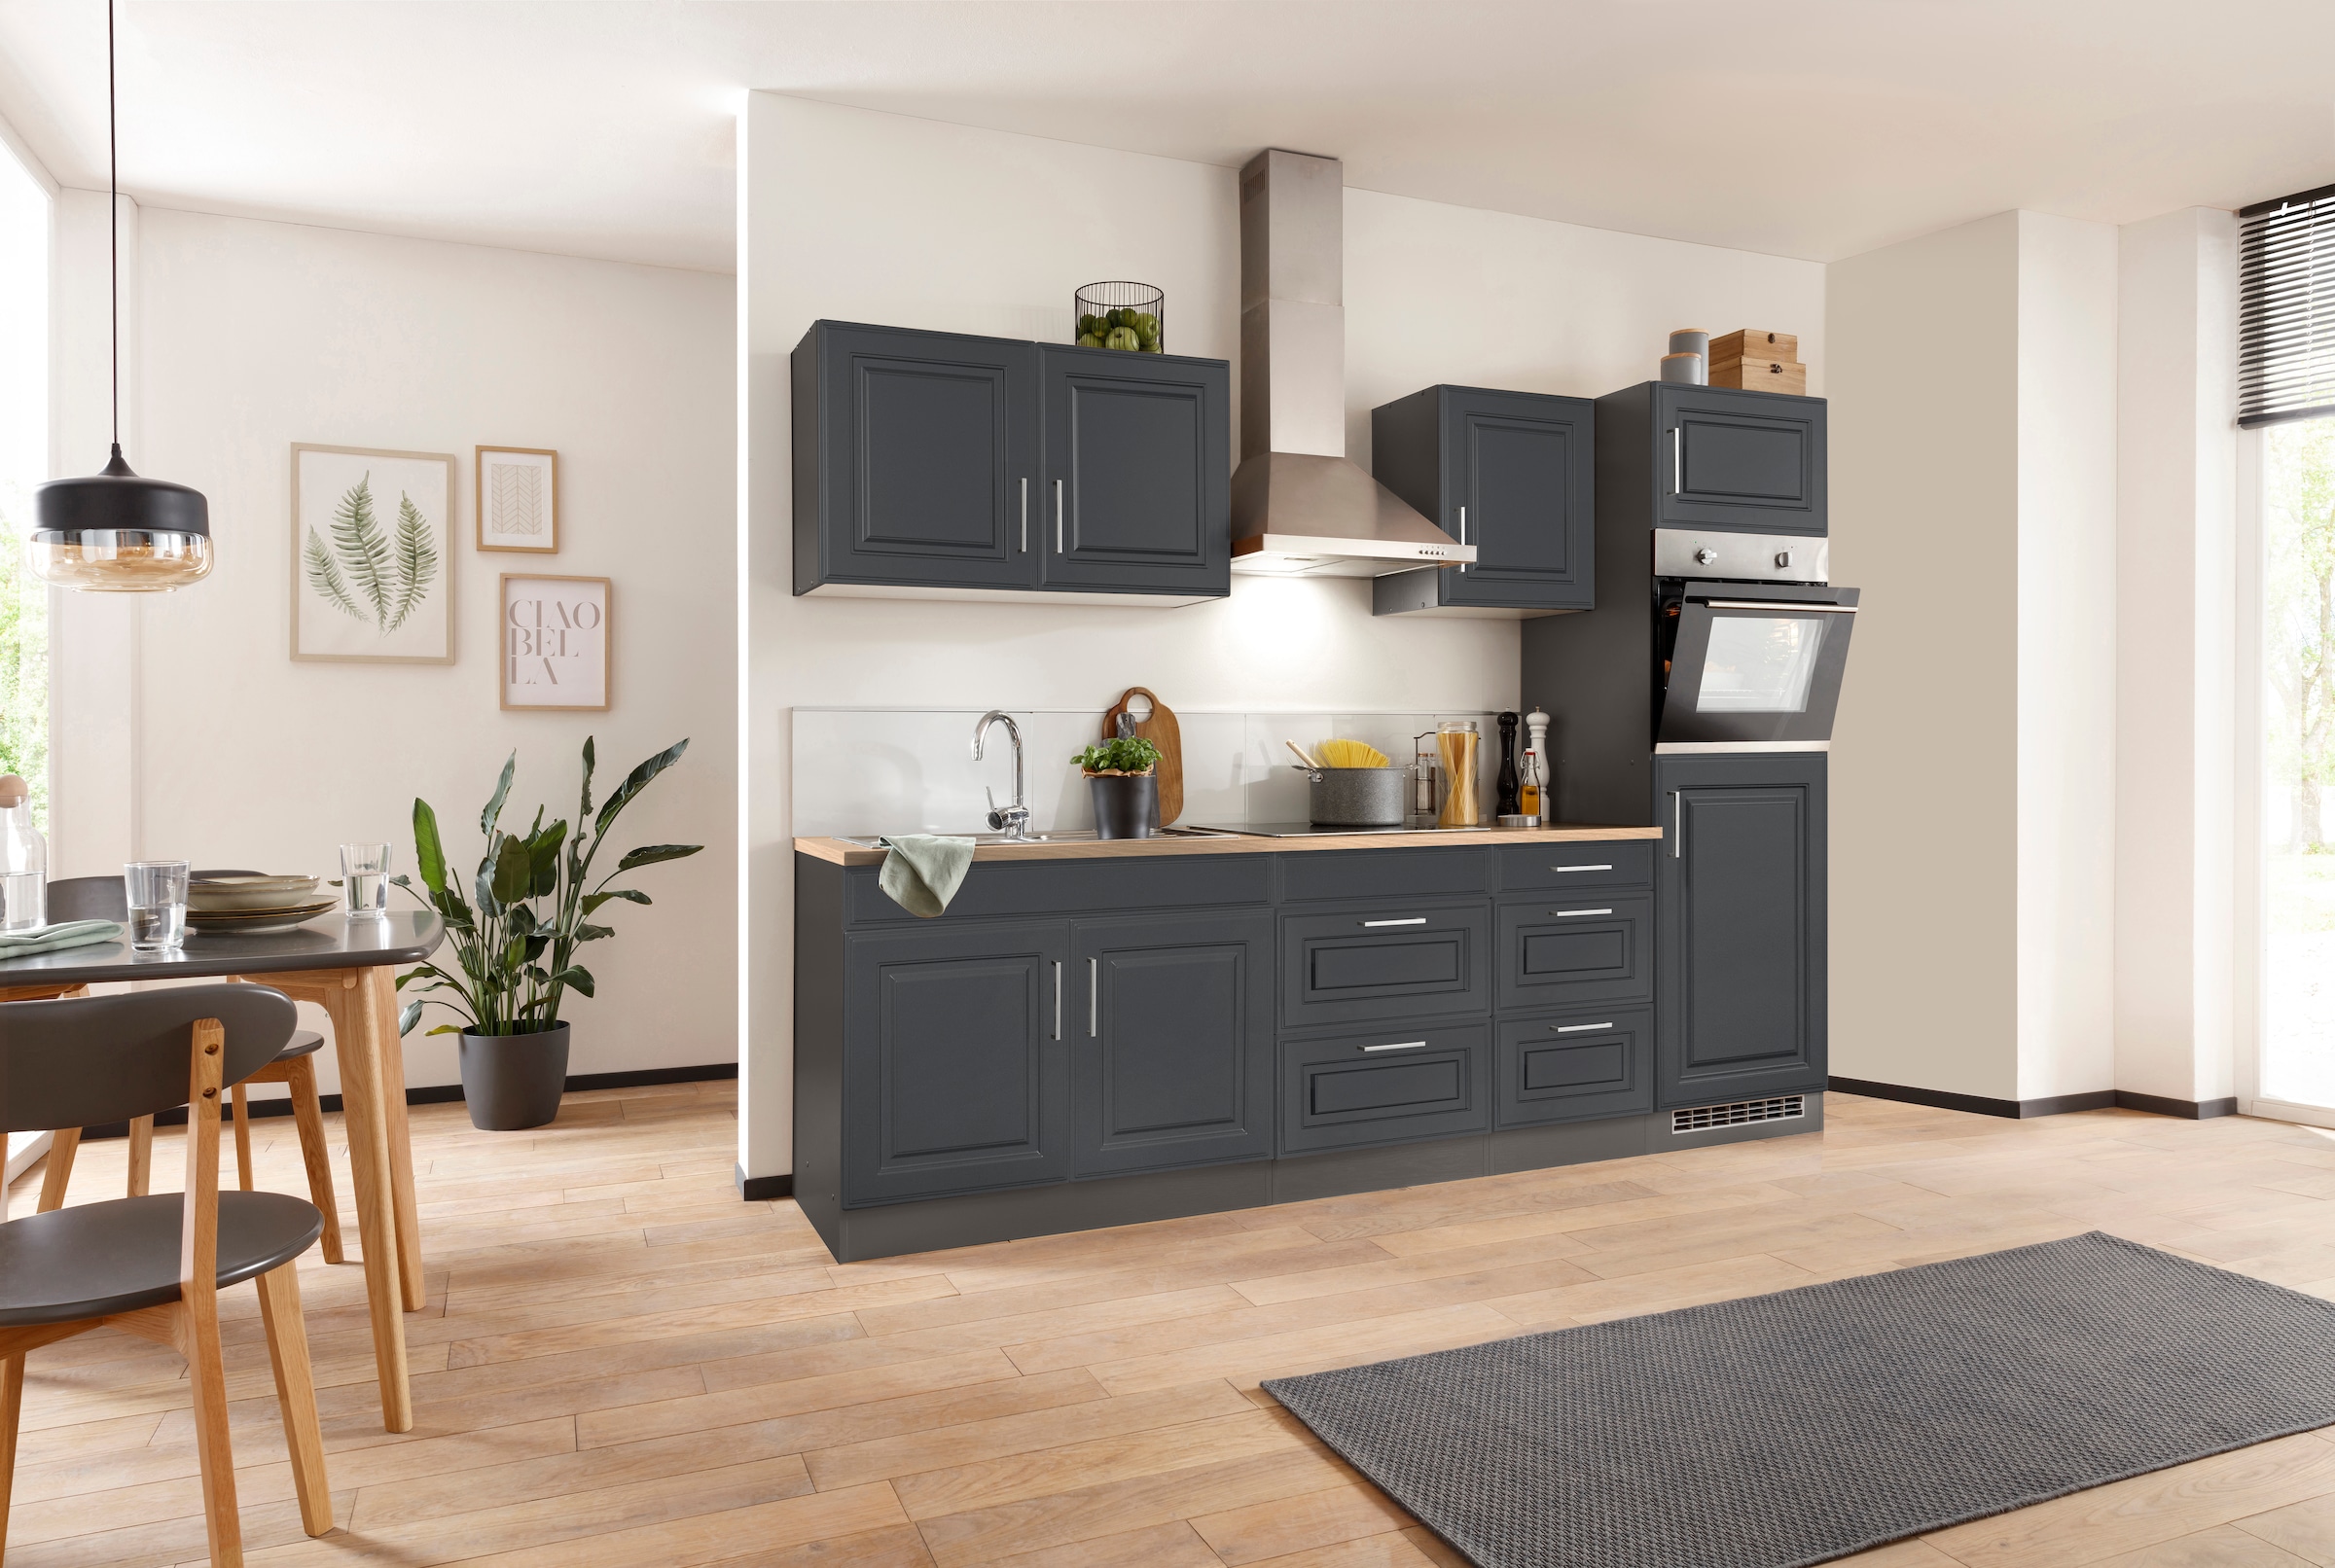 HELD MÖBEL im Breite Küchenzeile Fronten cm, mit hochwertigen Landhaus-Stil kaufen bequem 270 MDF »Stockholm«